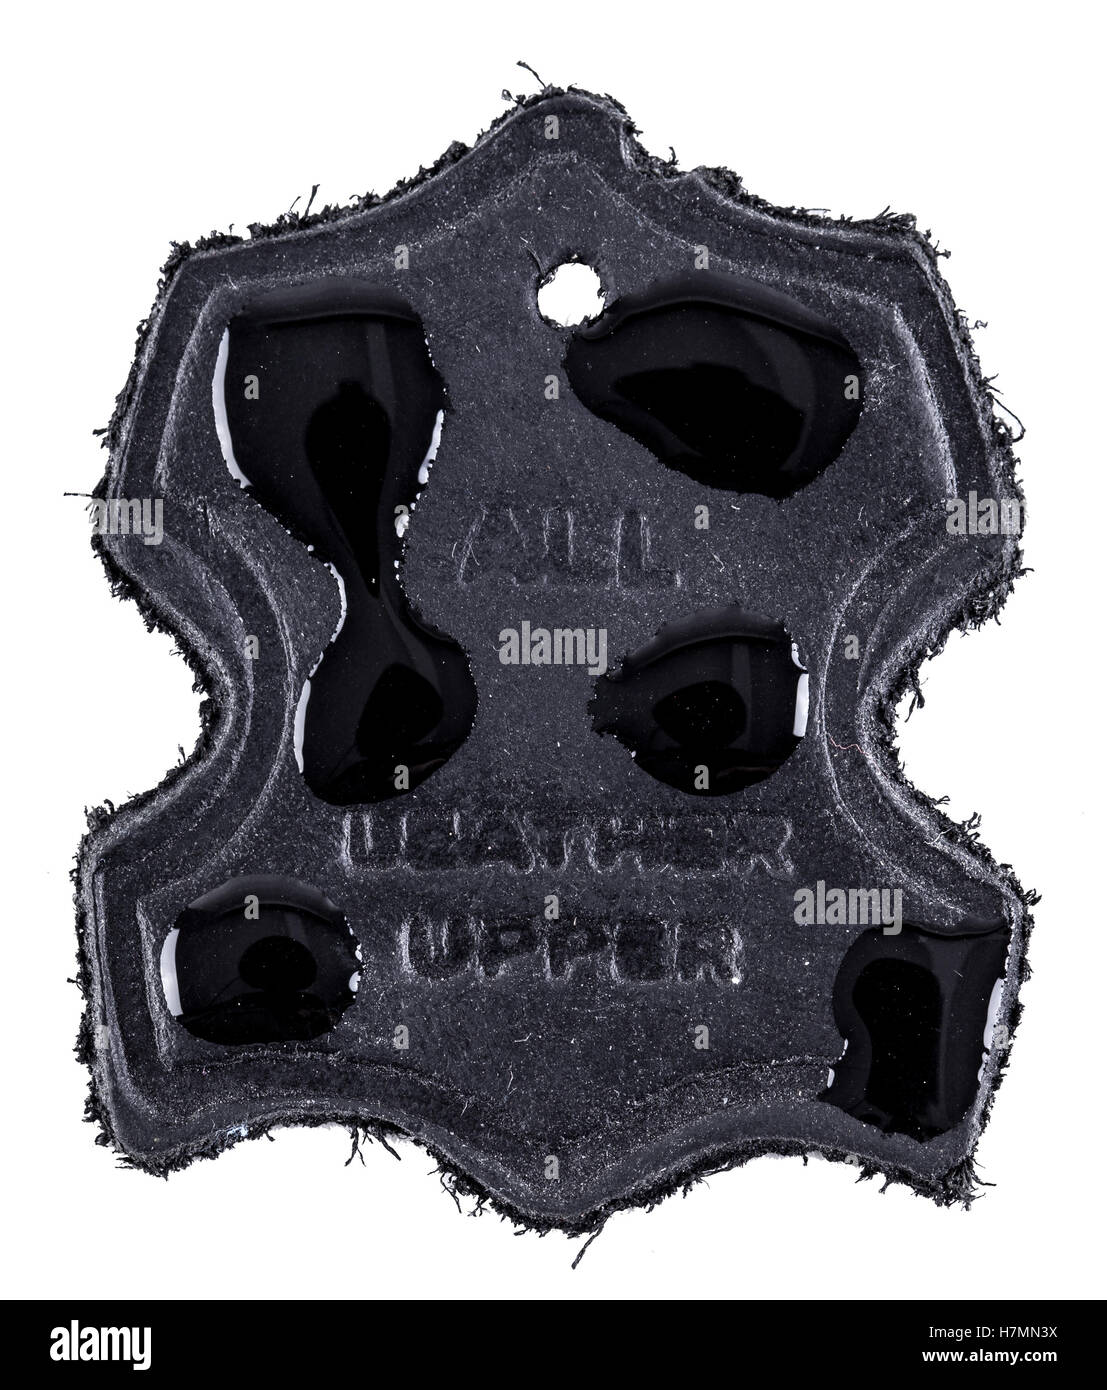 Label aus echtem Leder in schwarz mit Wasser fällt auf Wasserdichtigkeit zeigen. Isoliert auf weißem Hintergrund Stockfoto